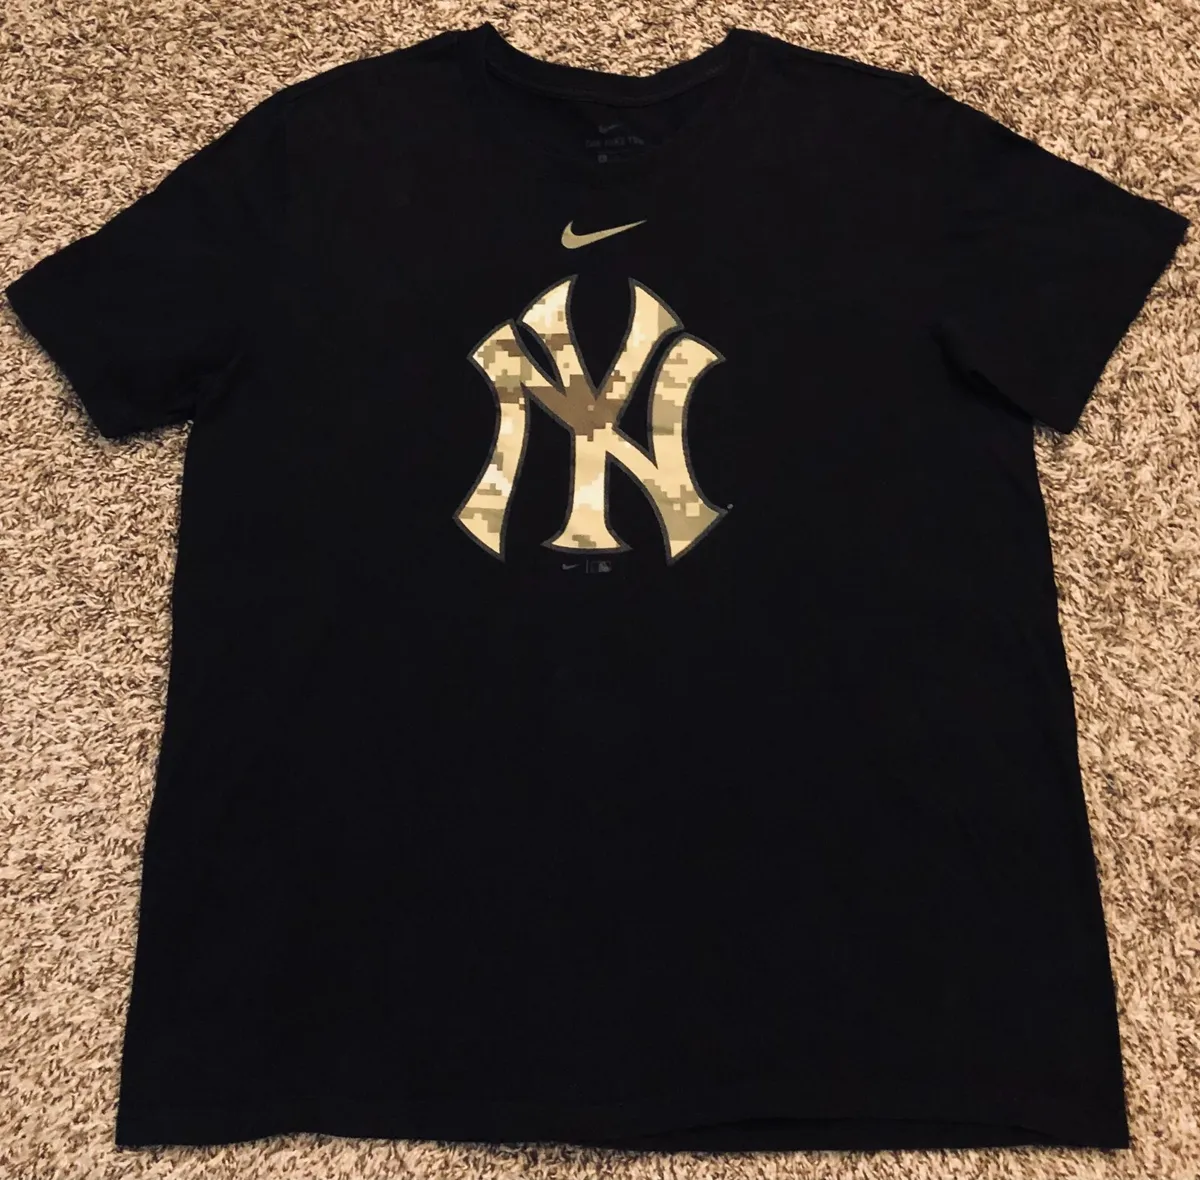 new york yankees camo shirt